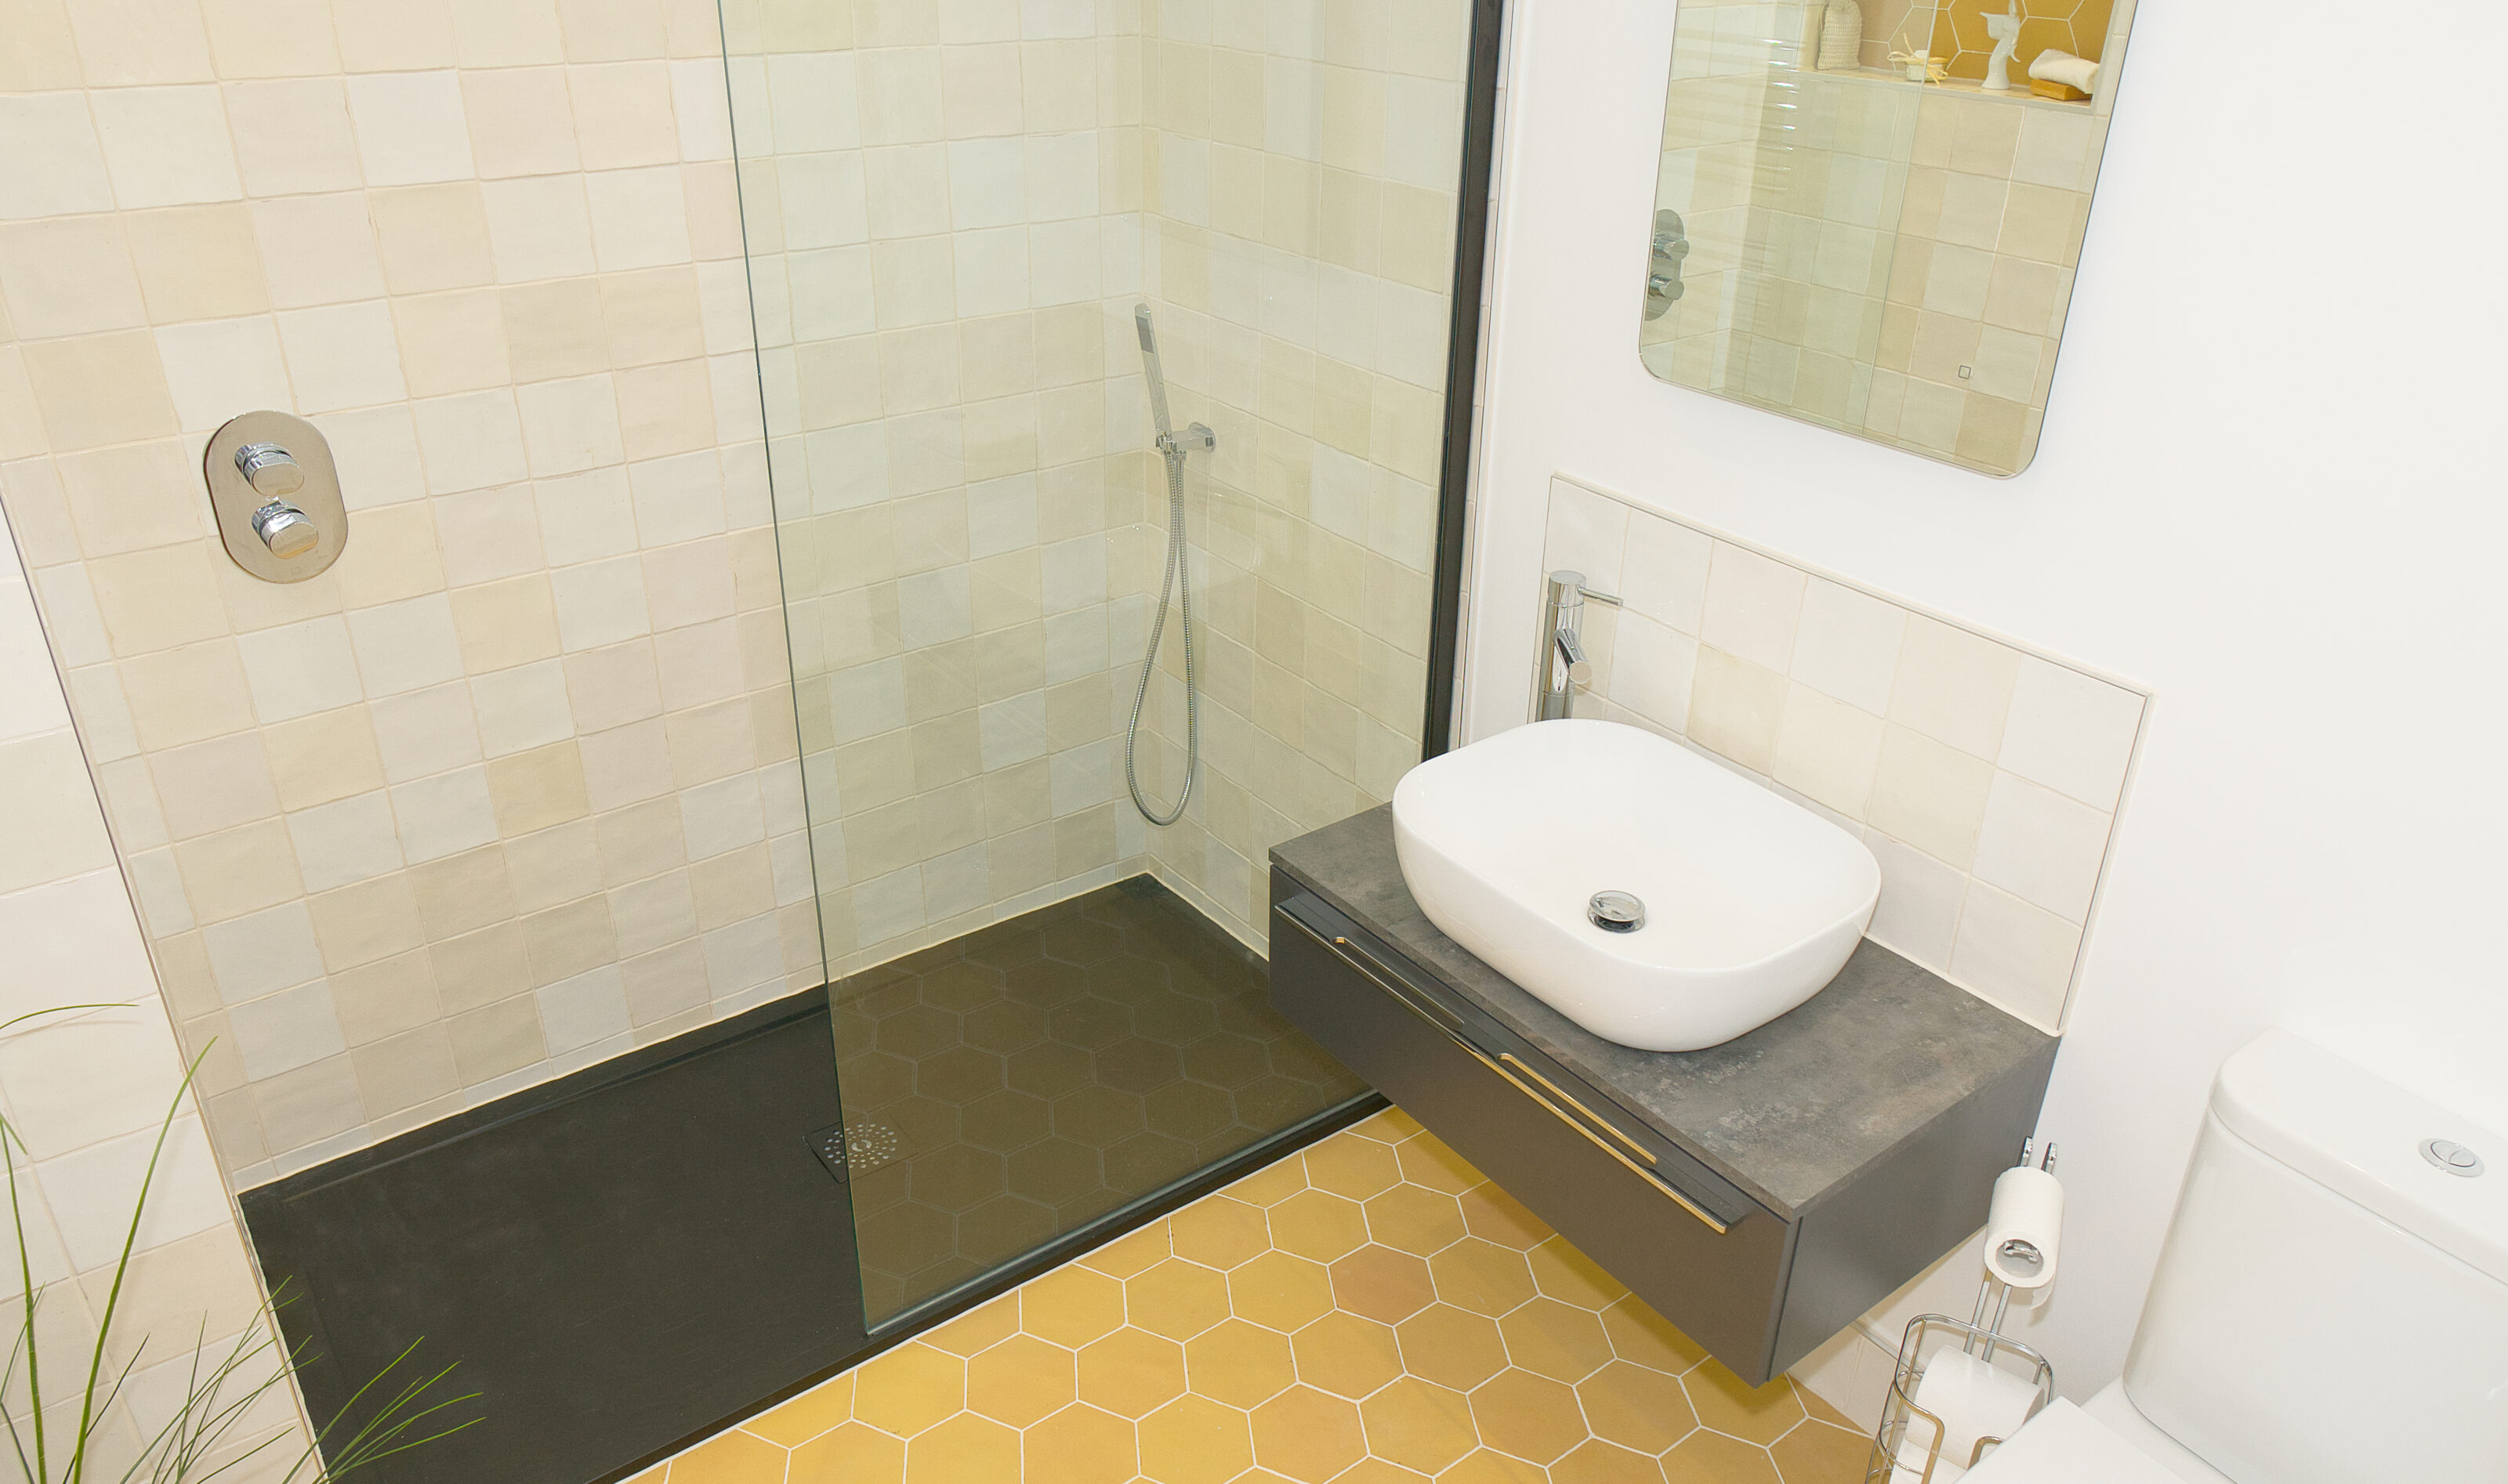 yellow hexagon bathroom new image tiles weymouth